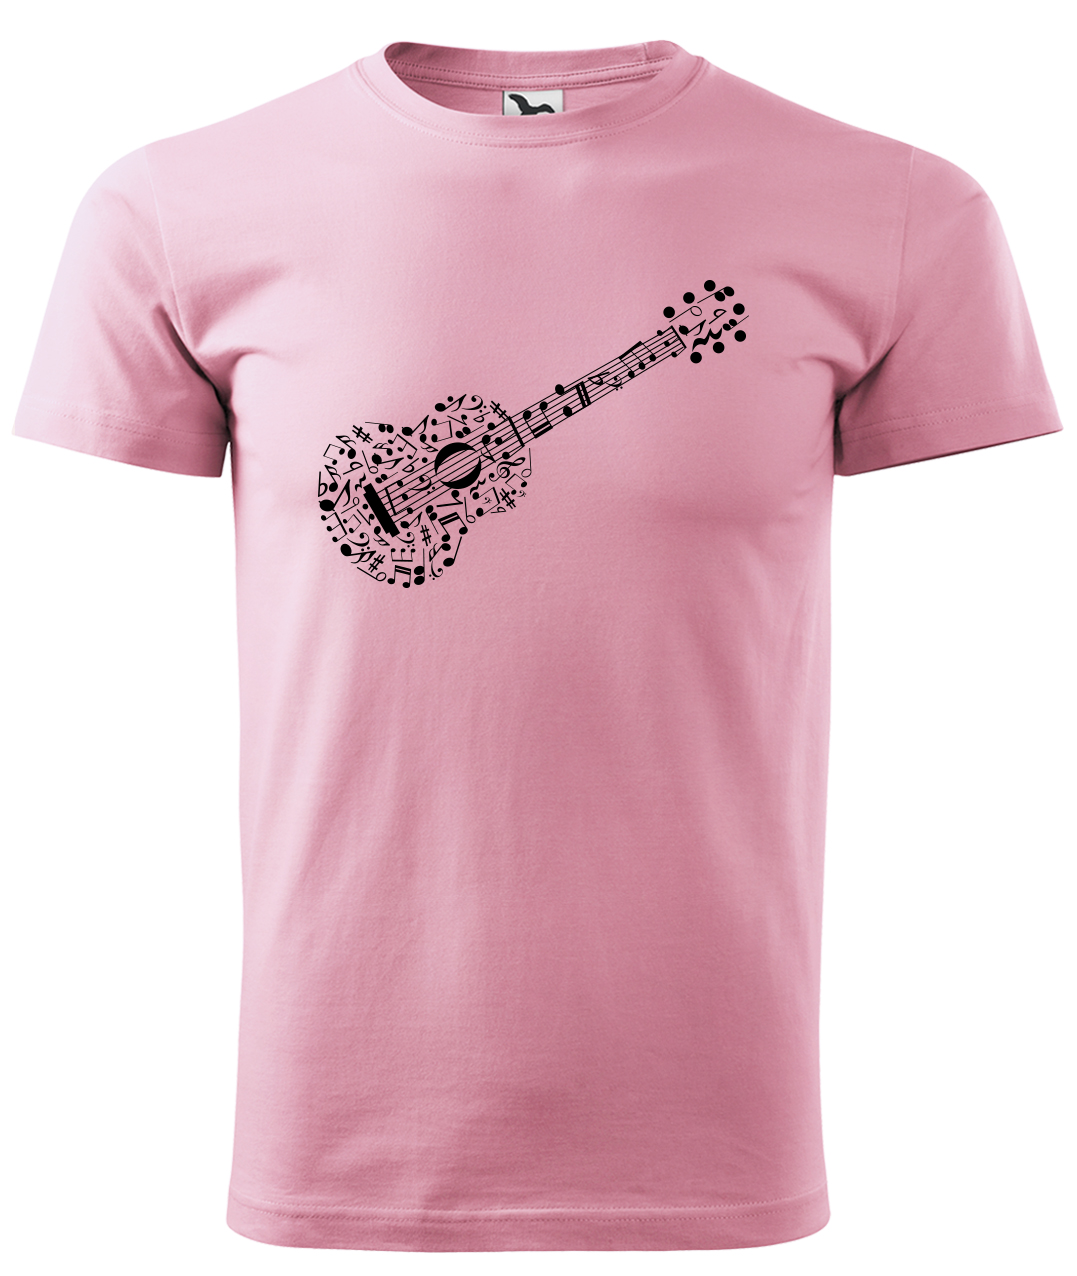 Dětské tričko s kytarou - Kytara z not Velikost: 10 let / 146 cm, Barva: Růžová (30), Délka rukávu: Krátký rukáv